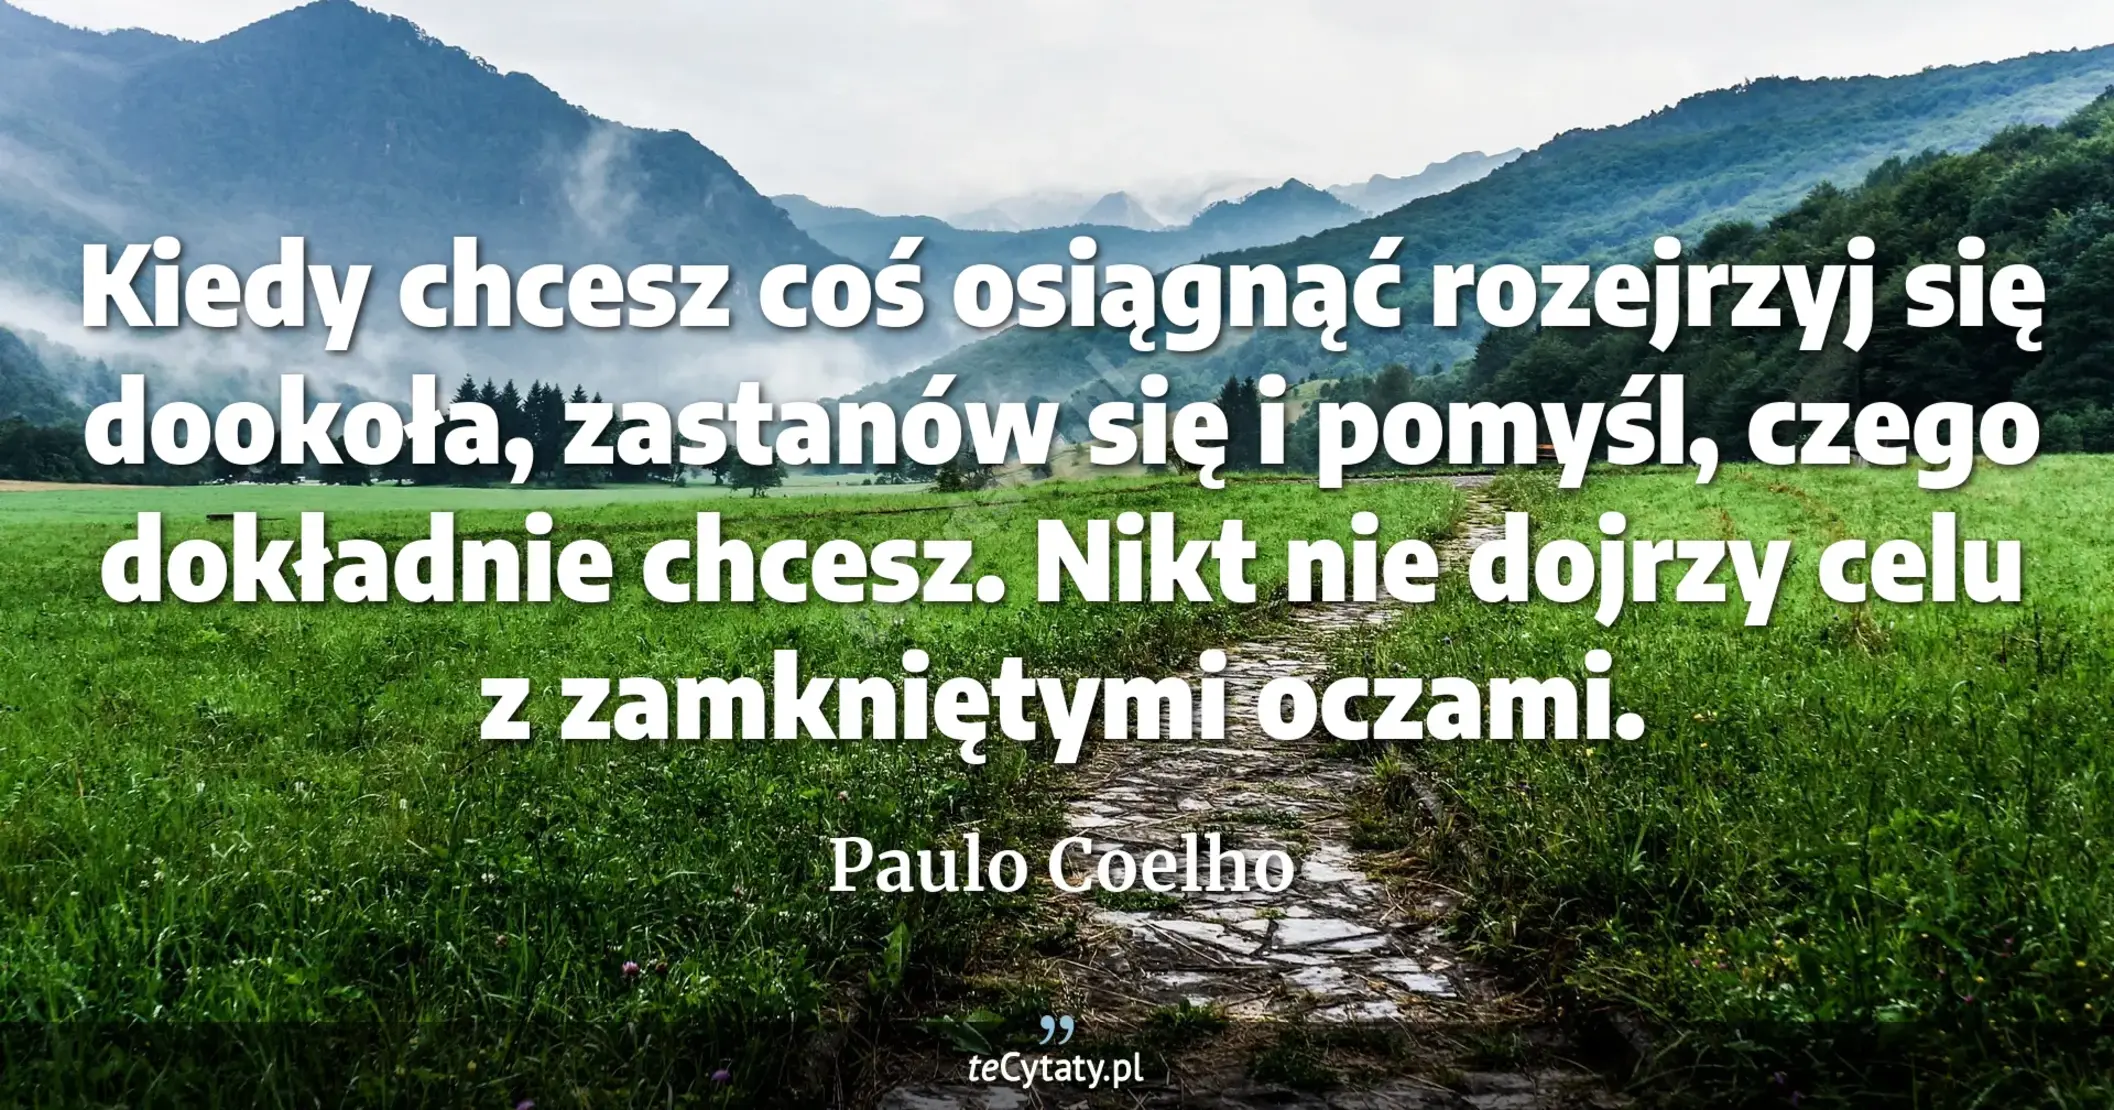 Kiedy chcesz coś osiągnąć rozejrzyj się dookoła, zastanów się i pomyśl, czego dokładnie chcesz. Nikt nie dojrzy celu z zamkniętymi oczami. - Paulo Coelho